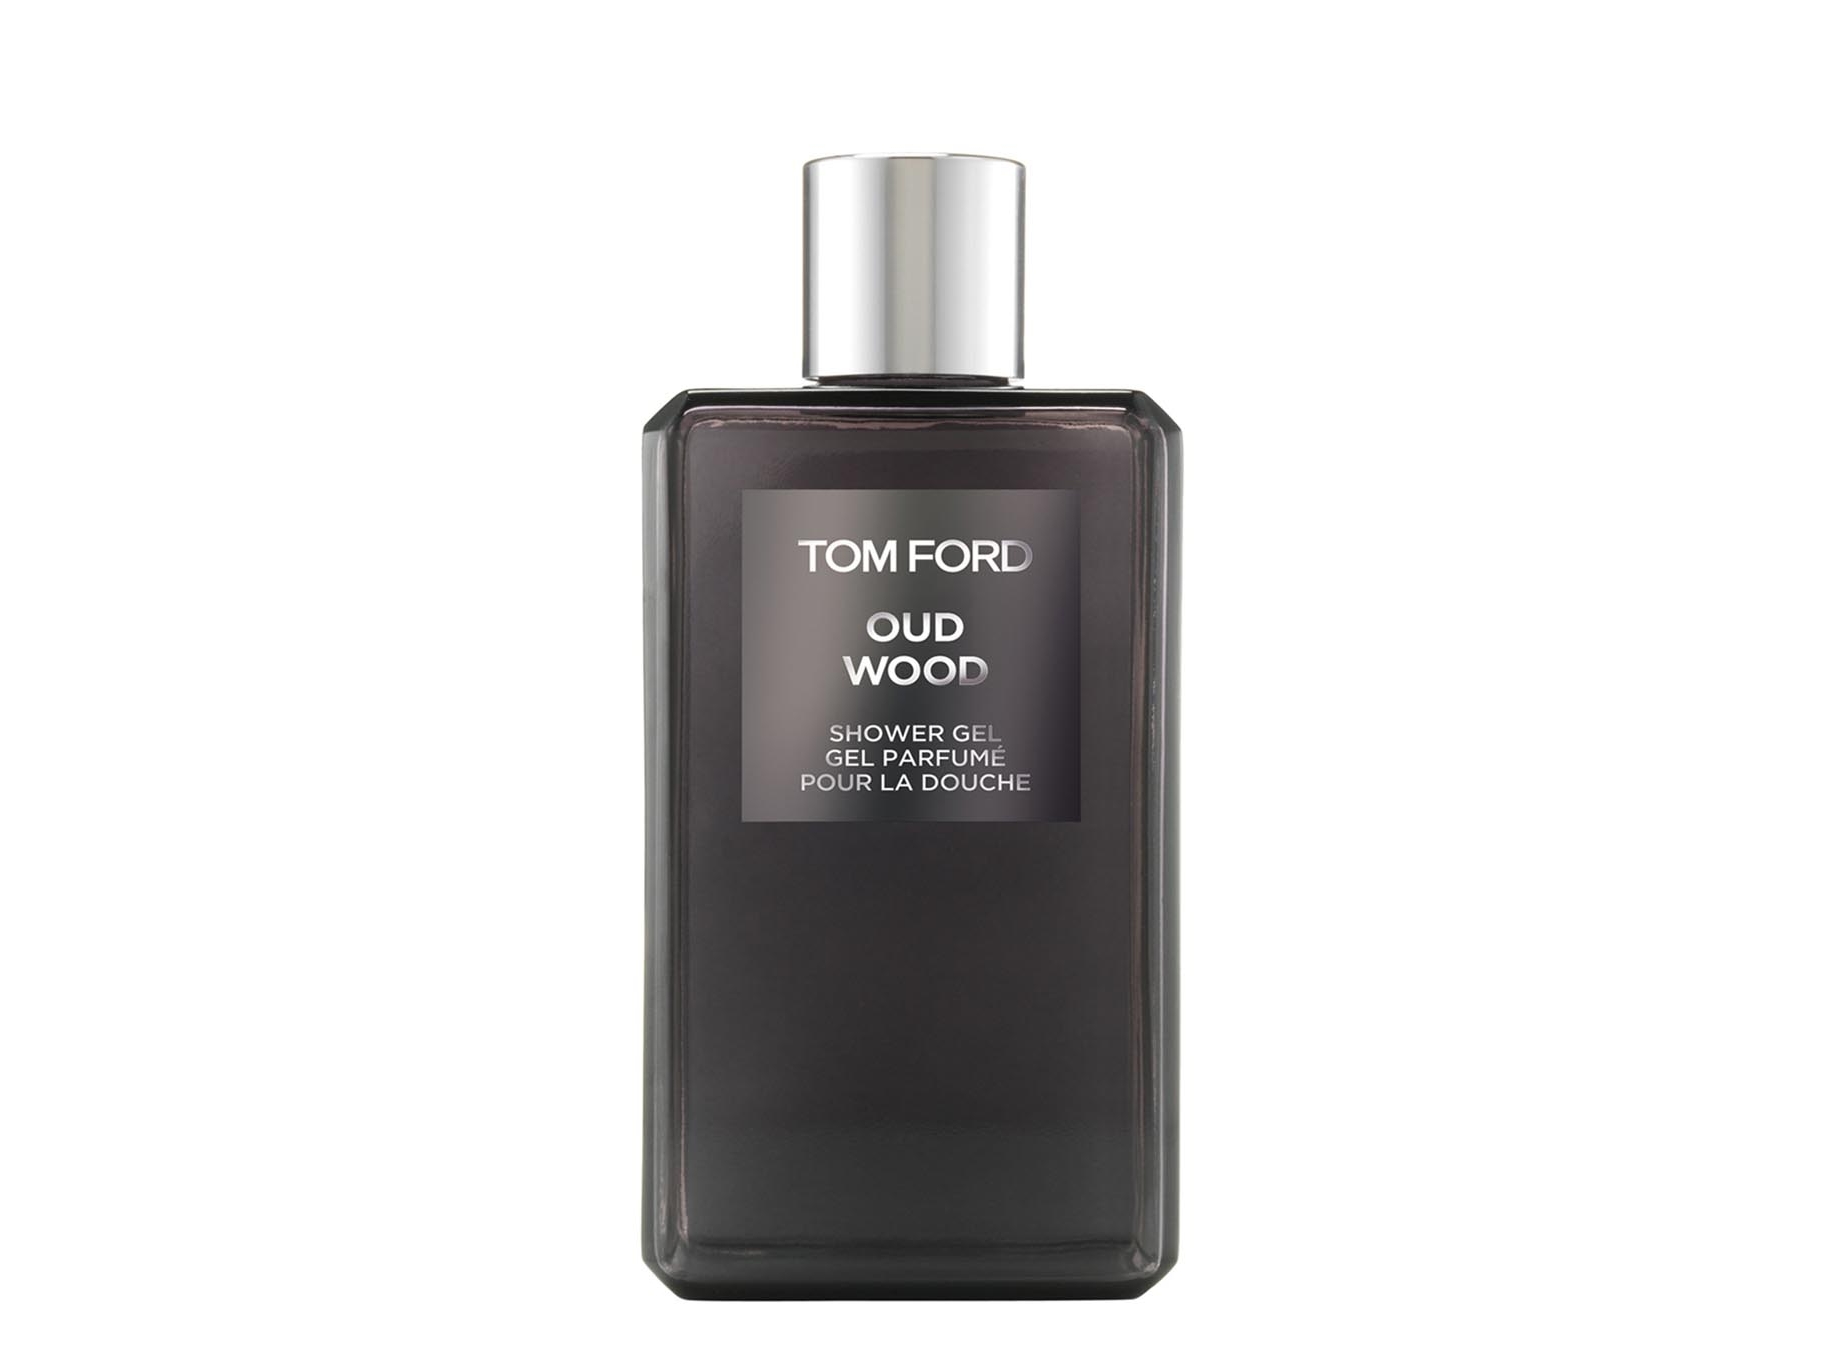 Tom Ford Oud Wood Shower Gel 250ml - Harvey Nichols